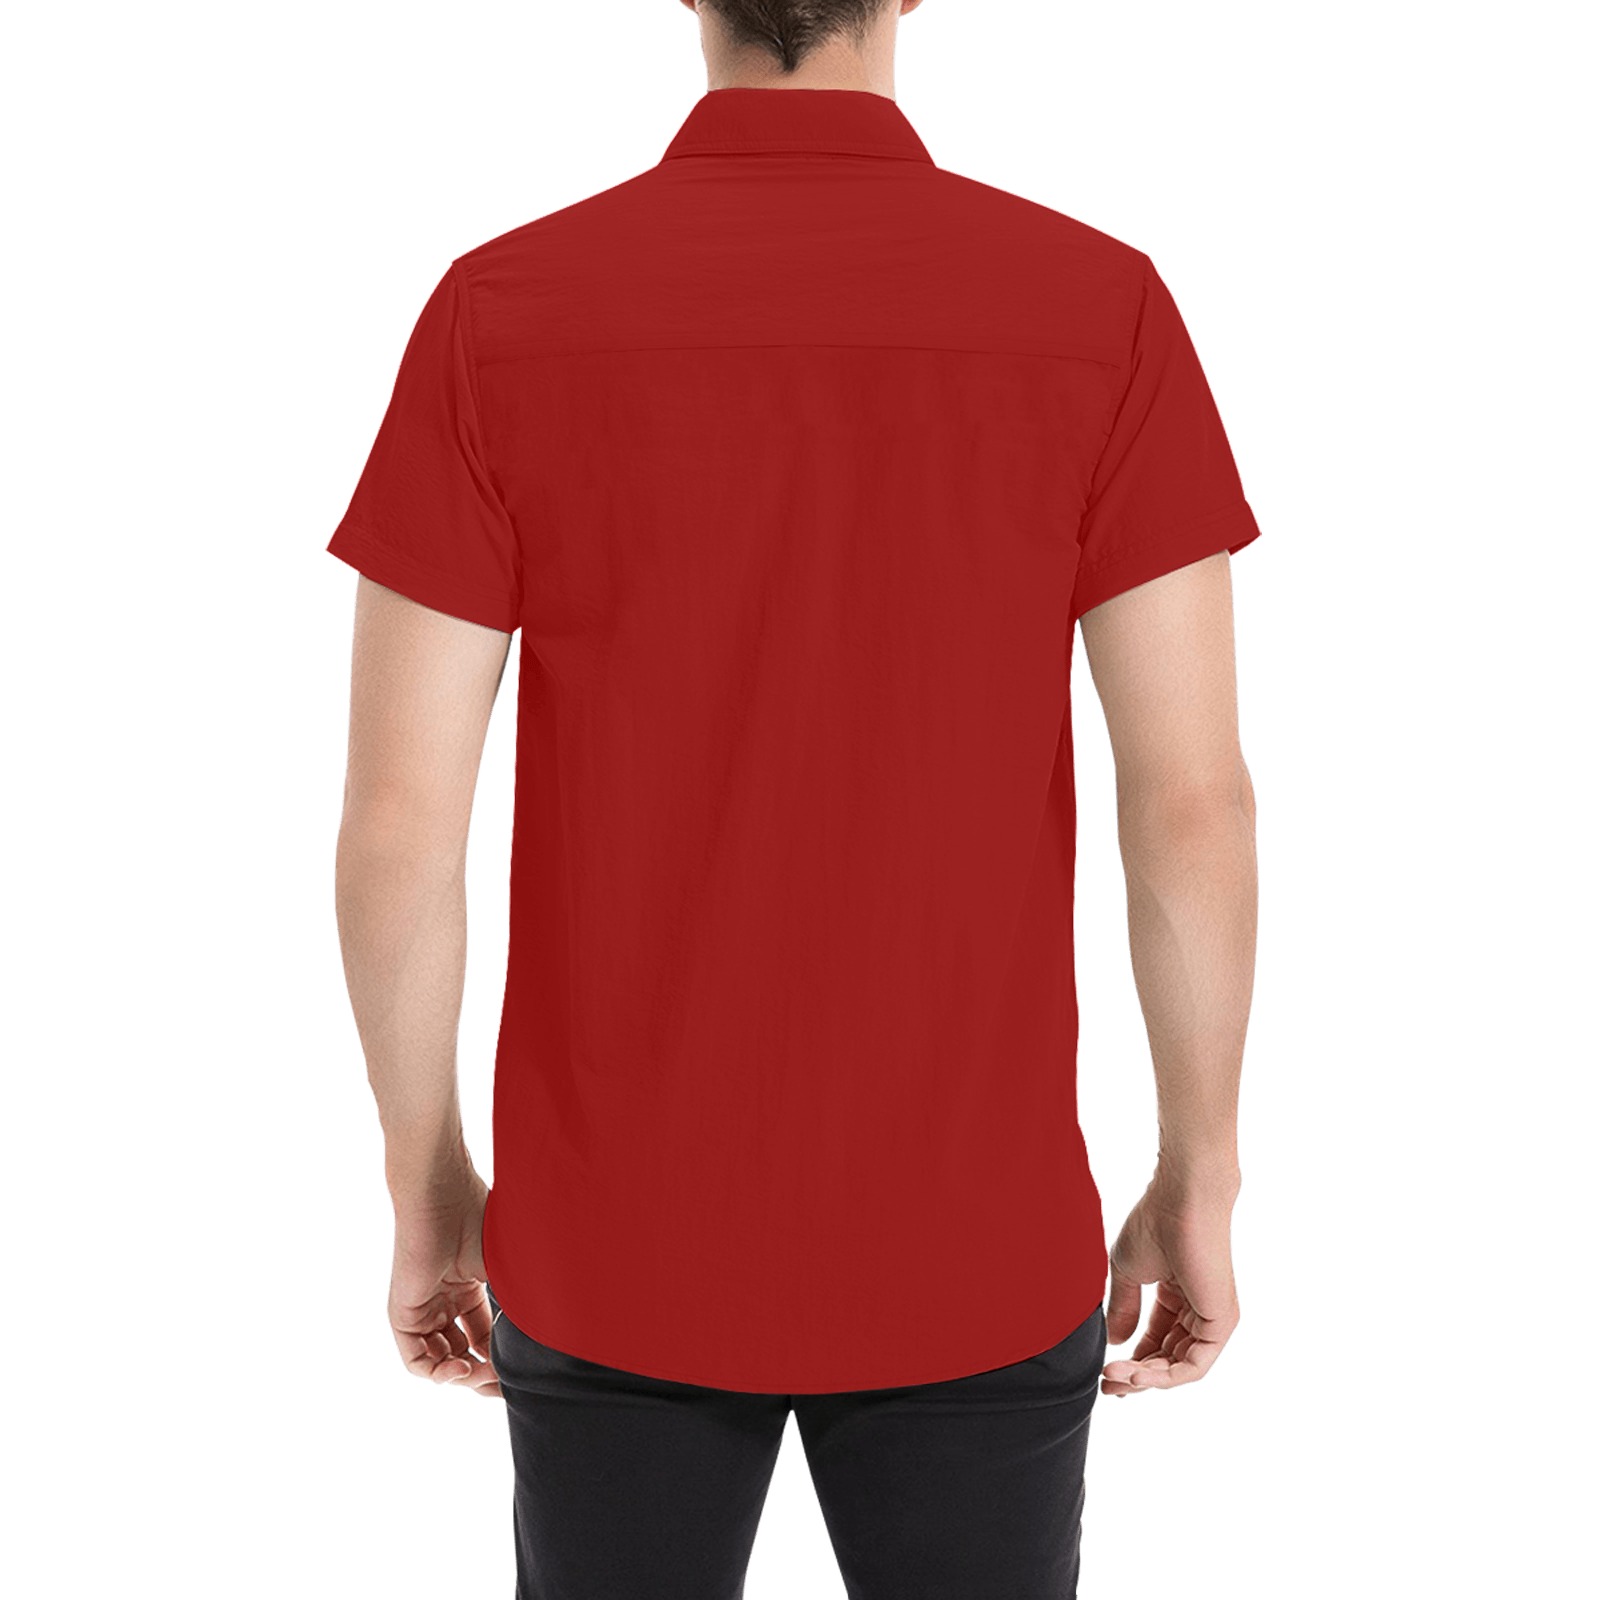 Eat Drink Dance Breakdance / Red Men's All Over Print Short Sleeve Shirt (Model T53)